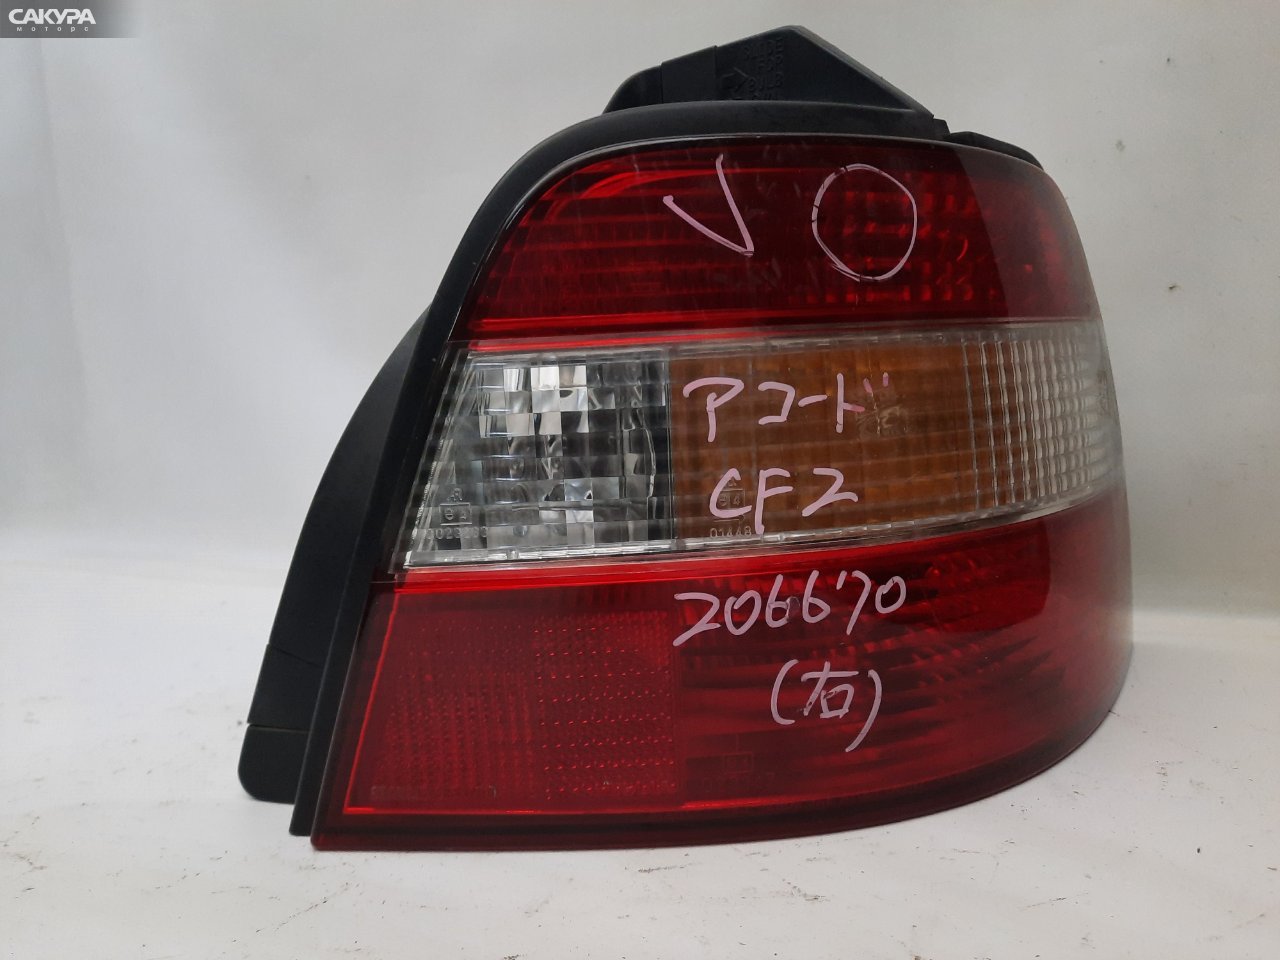 Фонарь стоп-сигнала правый Honda Accord CD3 043-1250: купить в Сакура Красноярск.